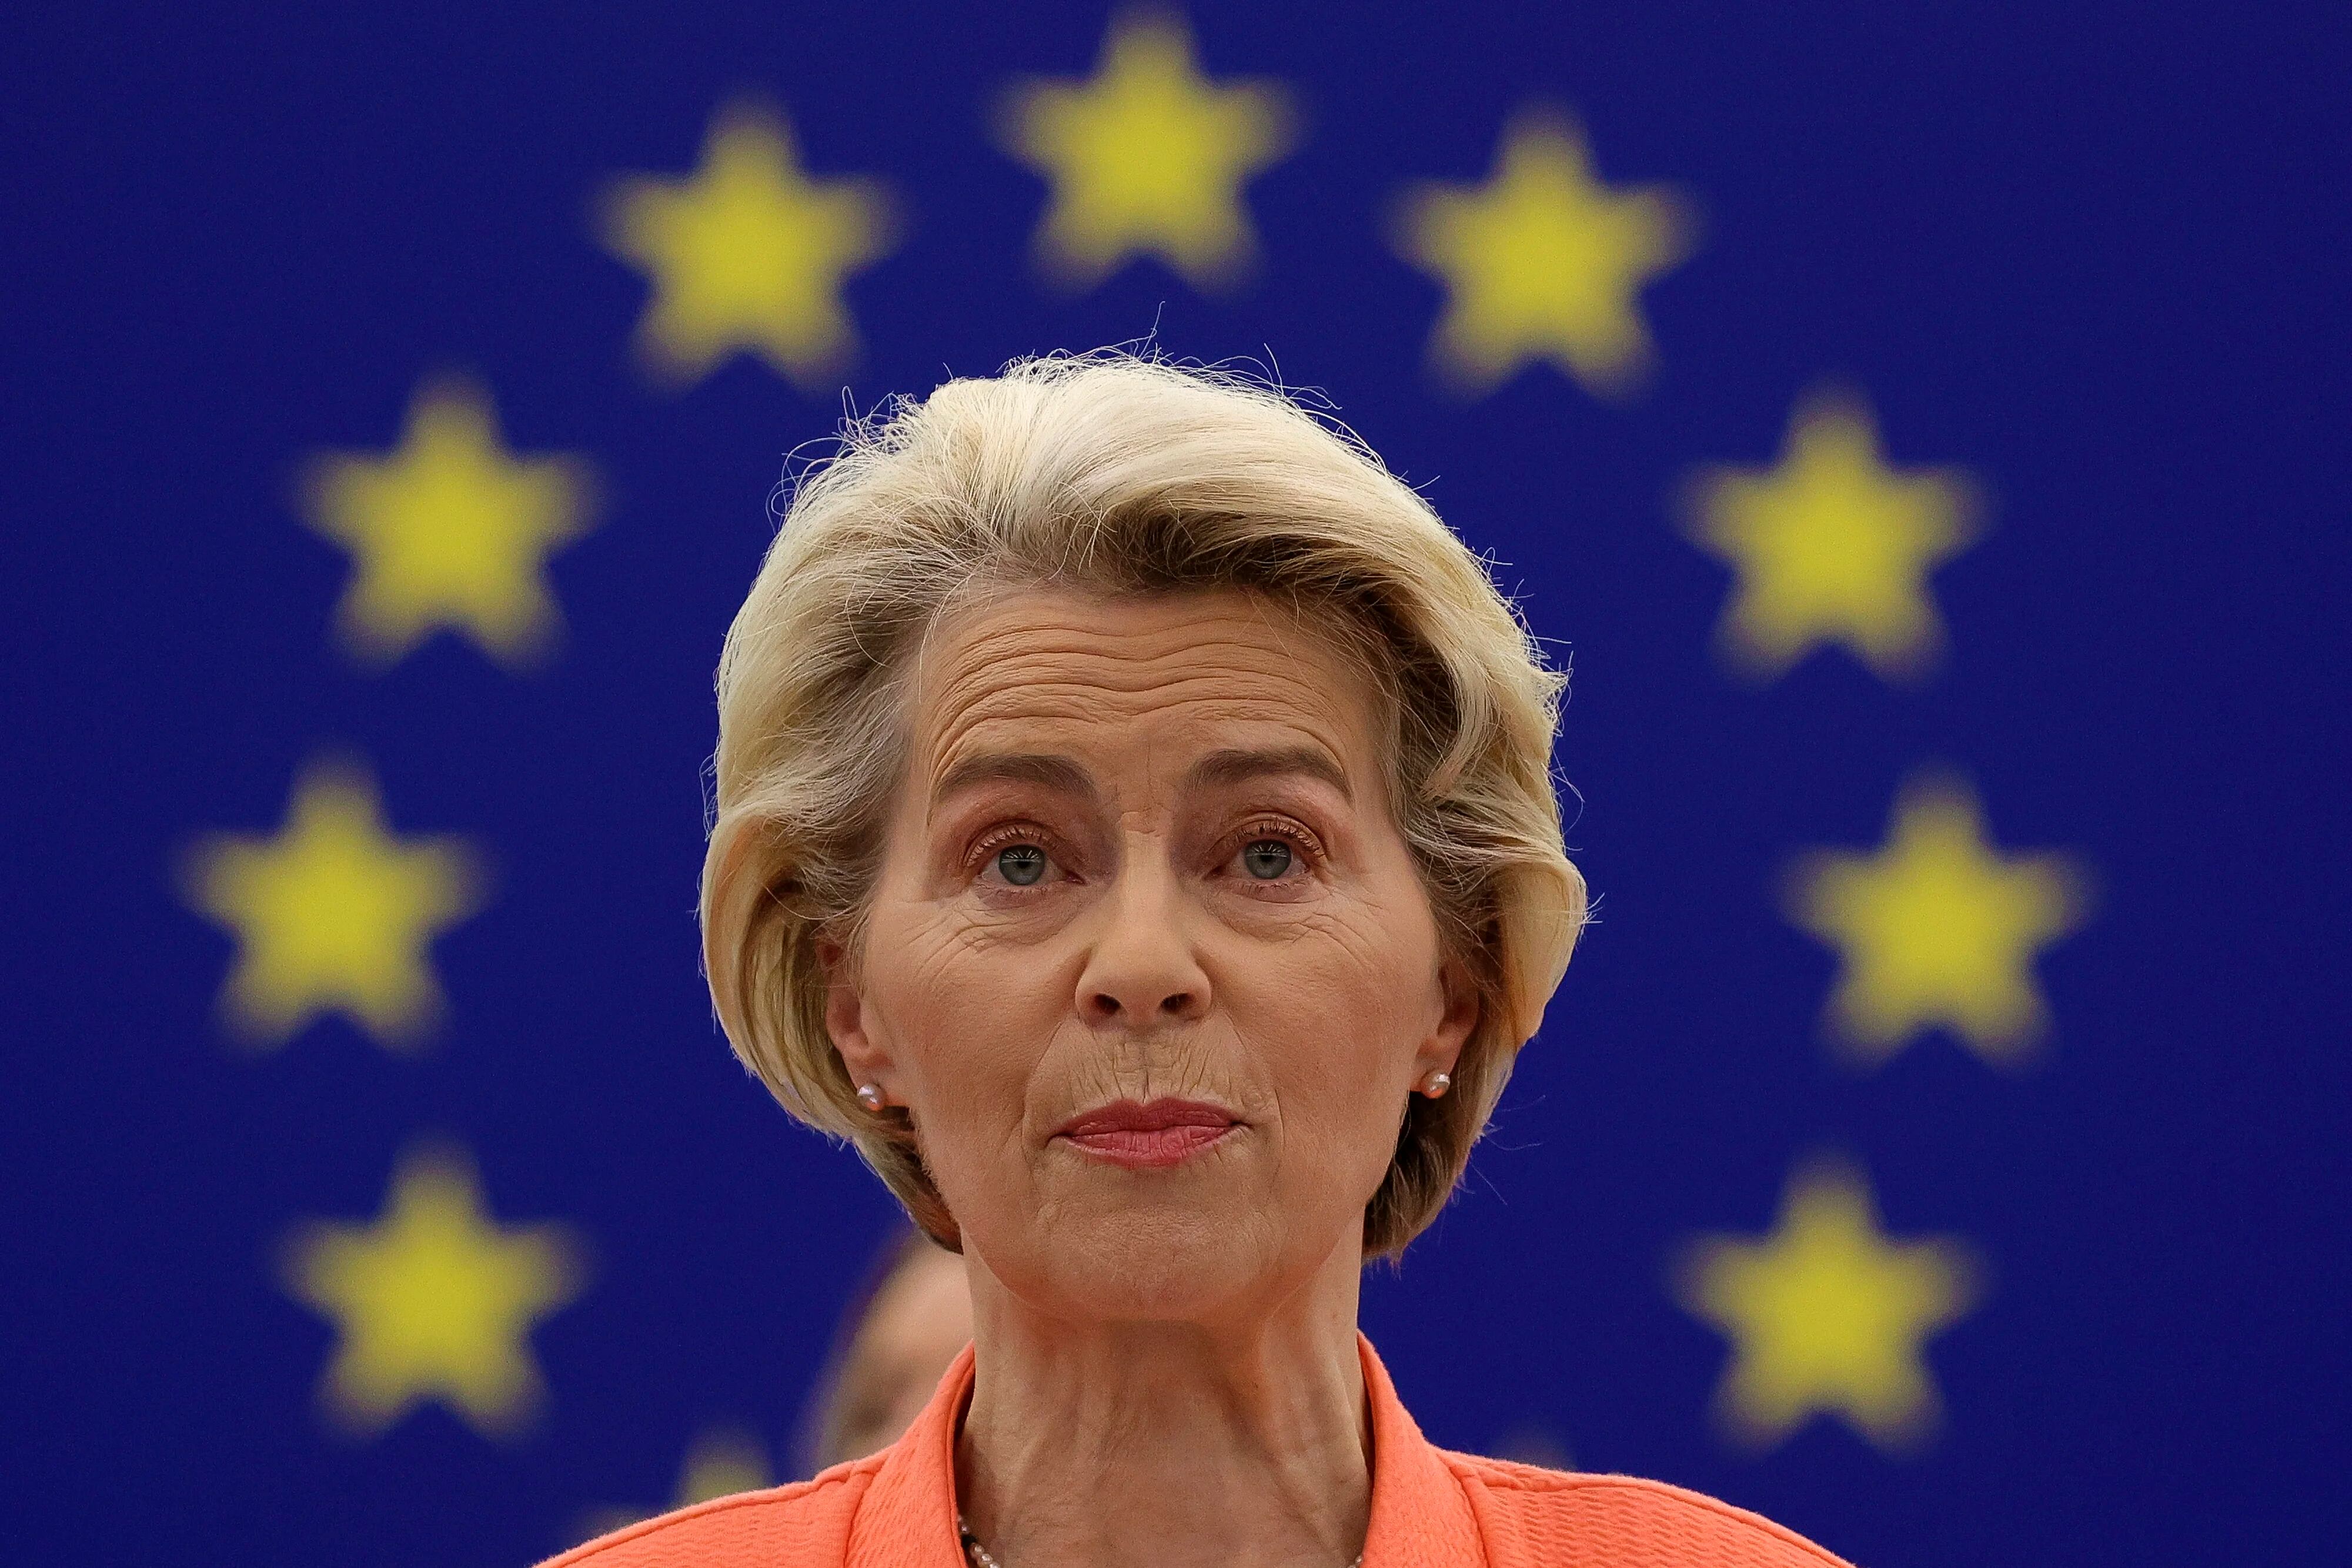 Foto de archivo de la presidenta de la Comisión Europea, Ursula von der Leyen. EFE/EPA/JULIEN WARNAND
